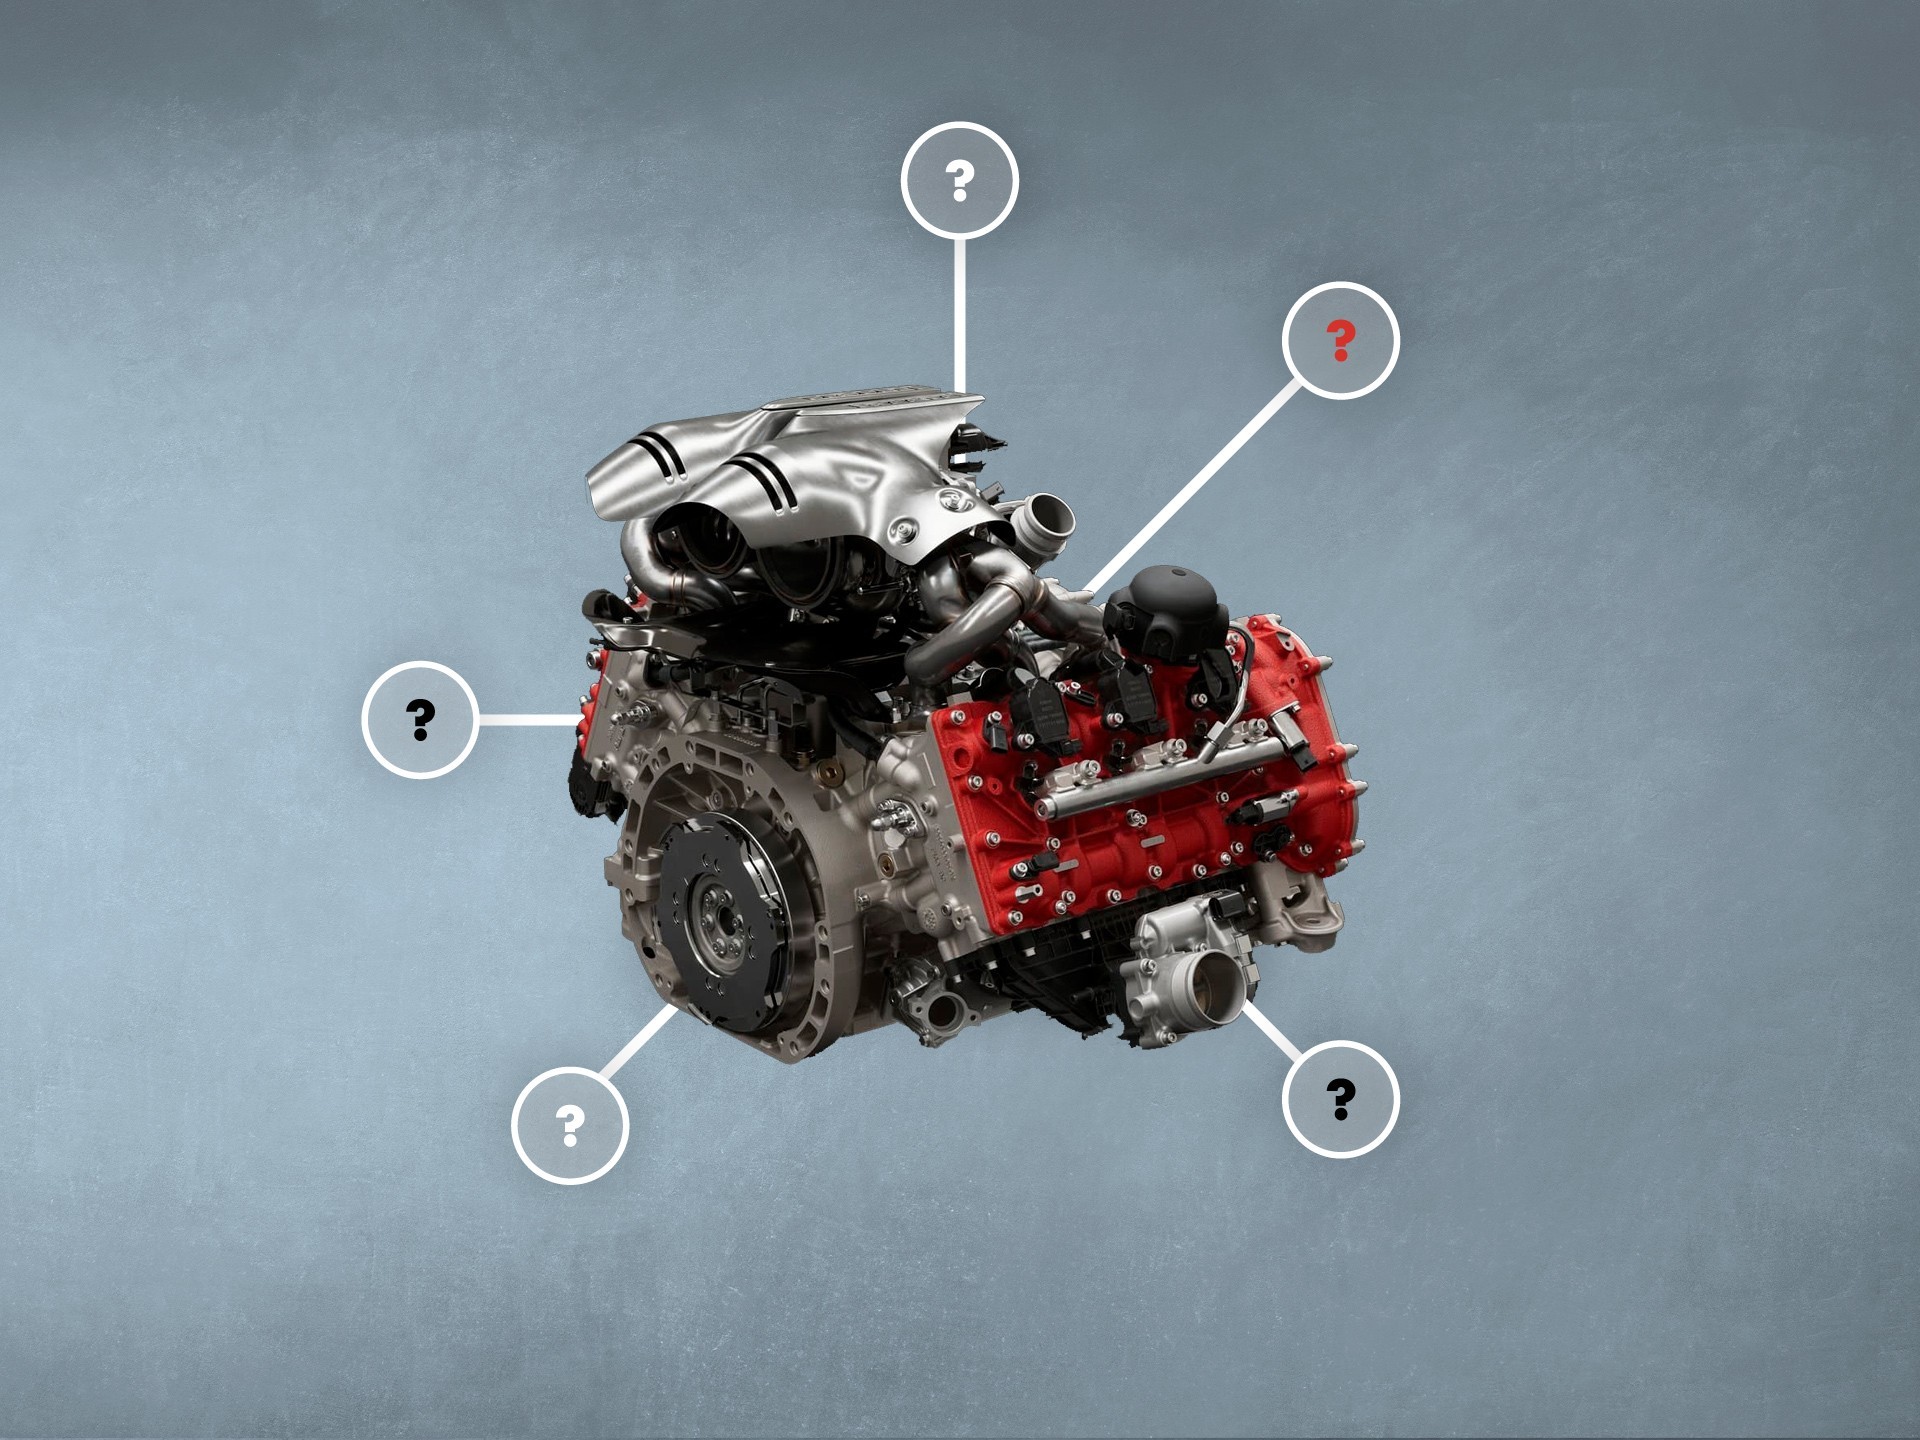 V6 engine in car - invenies in carros, aliquet ac SUVs